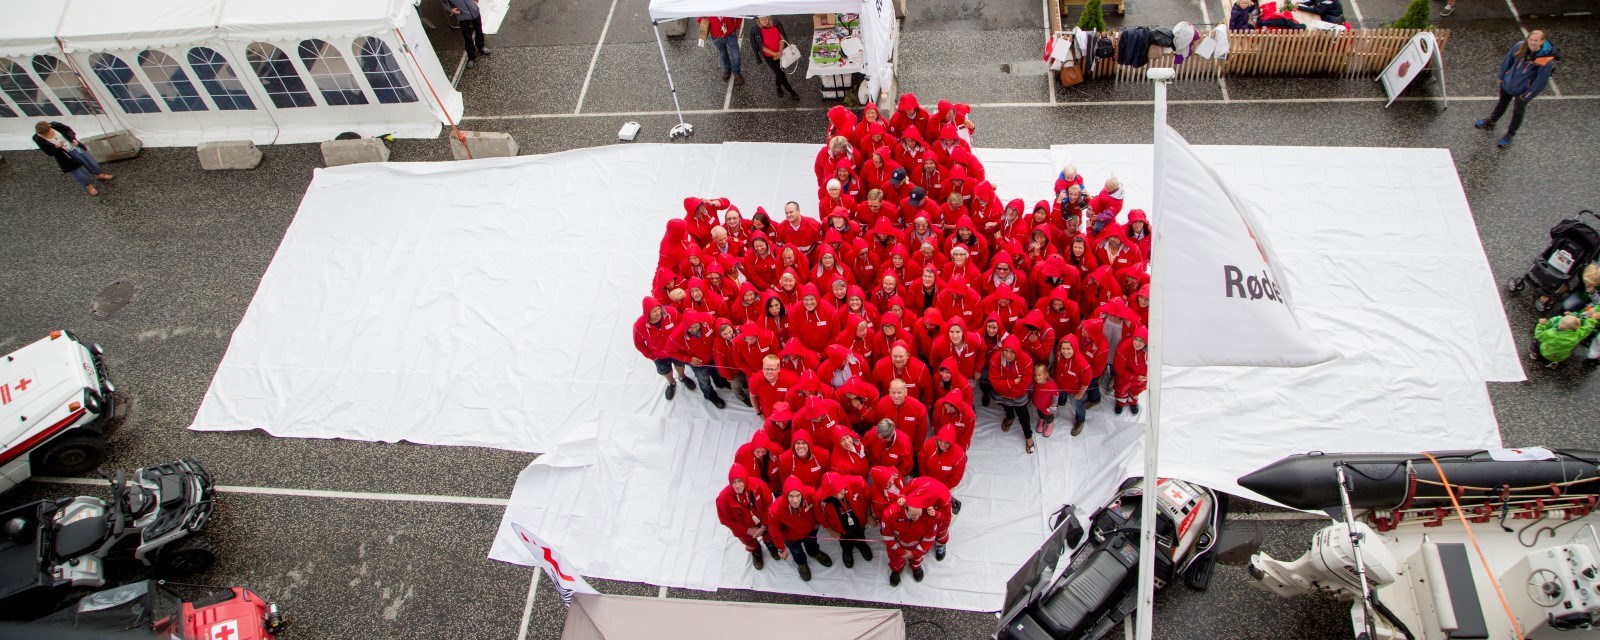 Mange mennesker kledd i rødt danner det røde korset på hvitt underlag.